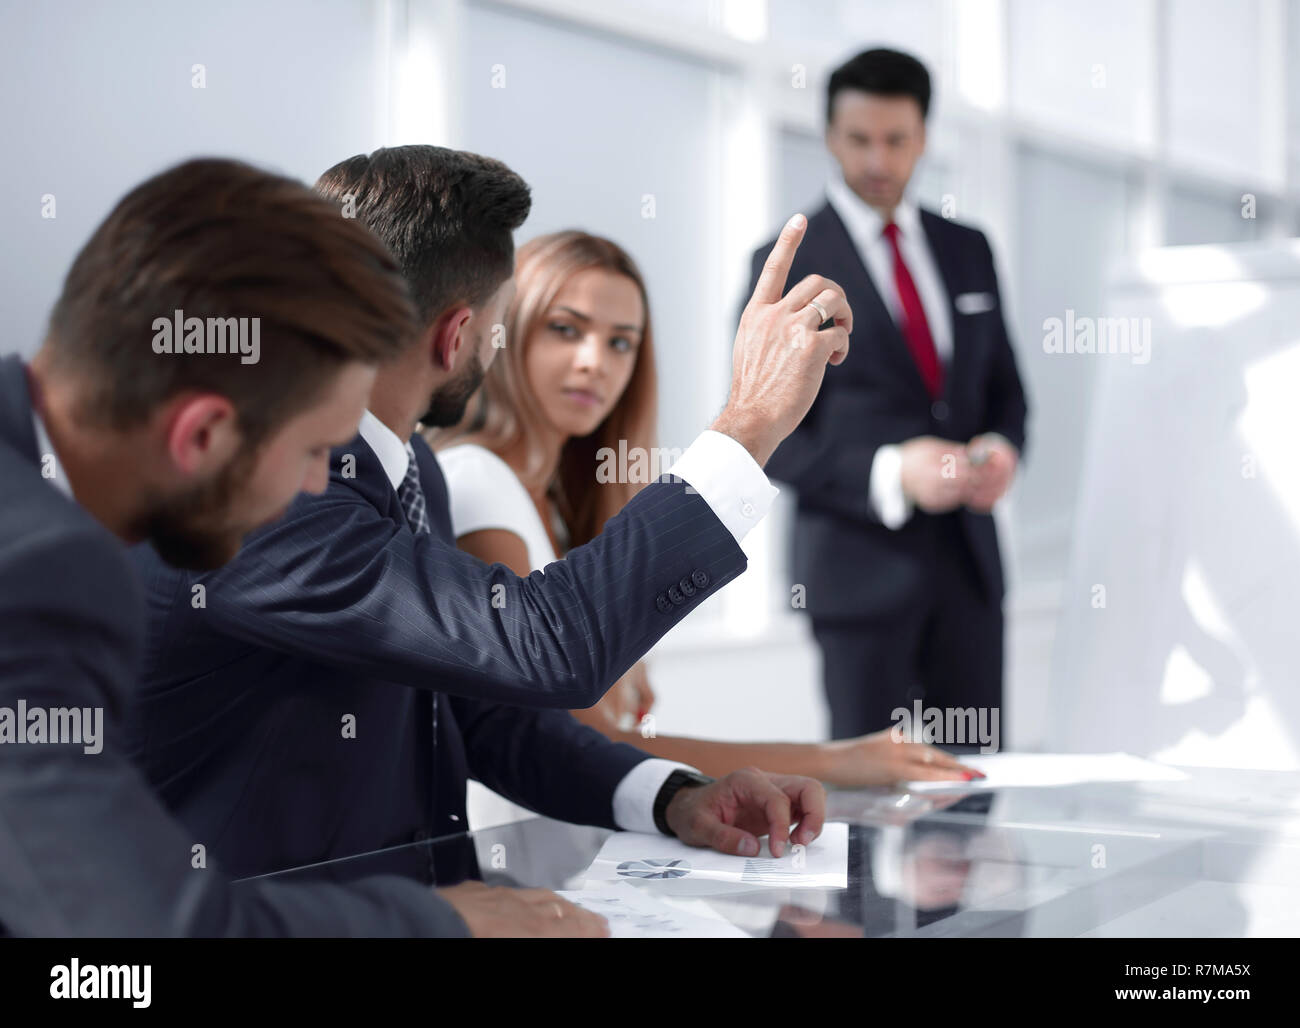 Mitarbeiter bei der Präsentation heben die Hand, um eine Frage zu stellen. Stockfoto